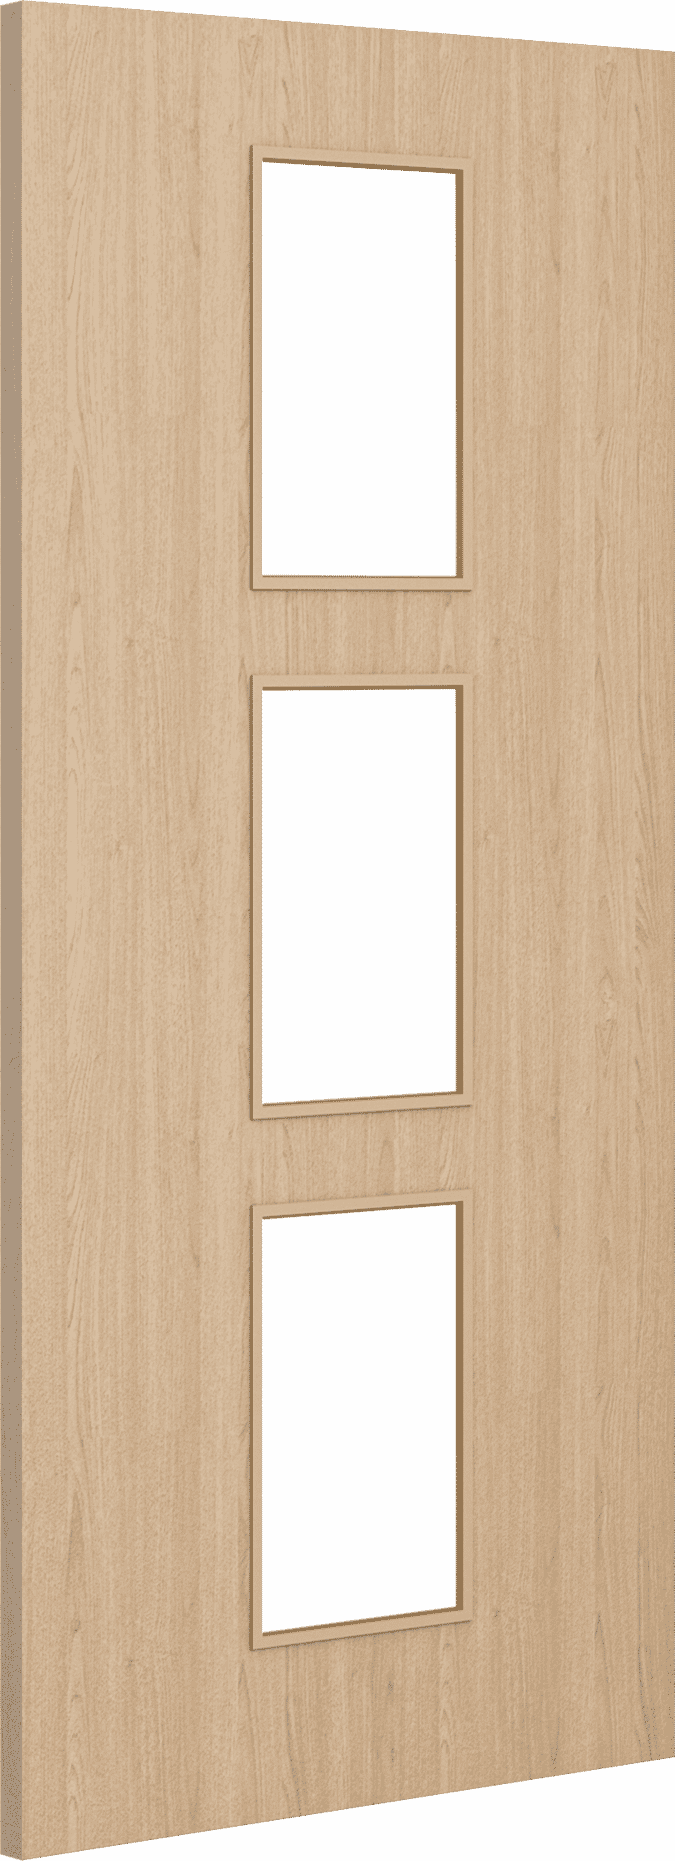 2040mm x 926mm x 54mm Architectural Oak 11 Clear Glazed - Prefinished FD60 Fire Door Blank